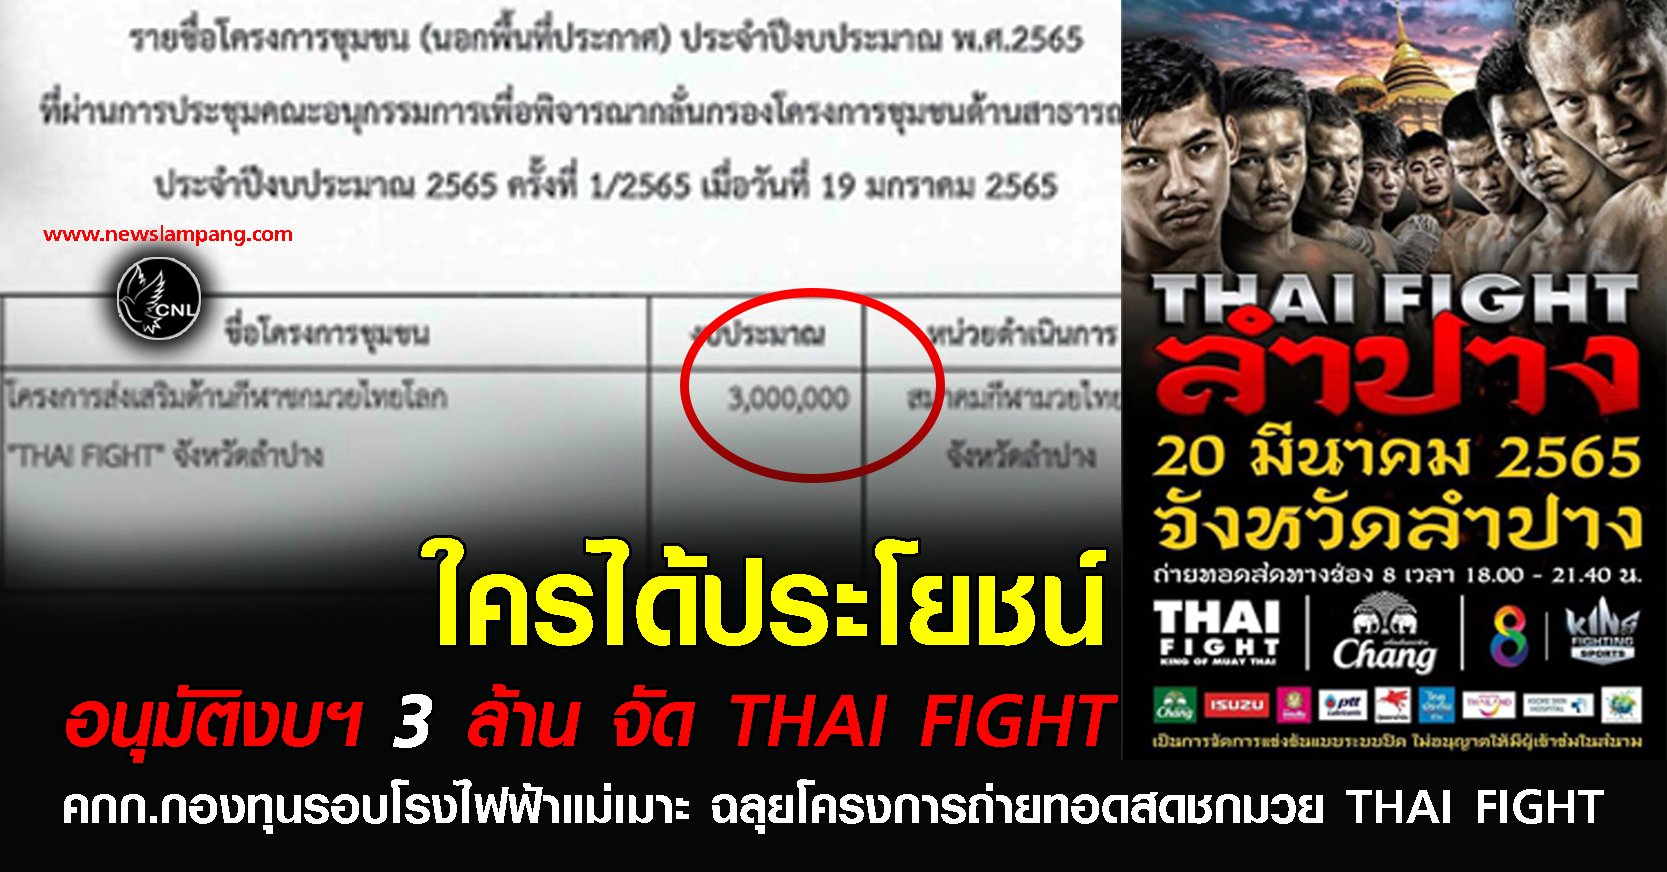 คนลำปางเริ่มวิจารณ์หลัง คกก.กองทุนรอบโรงไฟฟ้าฯ ละเลงงบ 3 ล้านจัด "Thai Fight"  